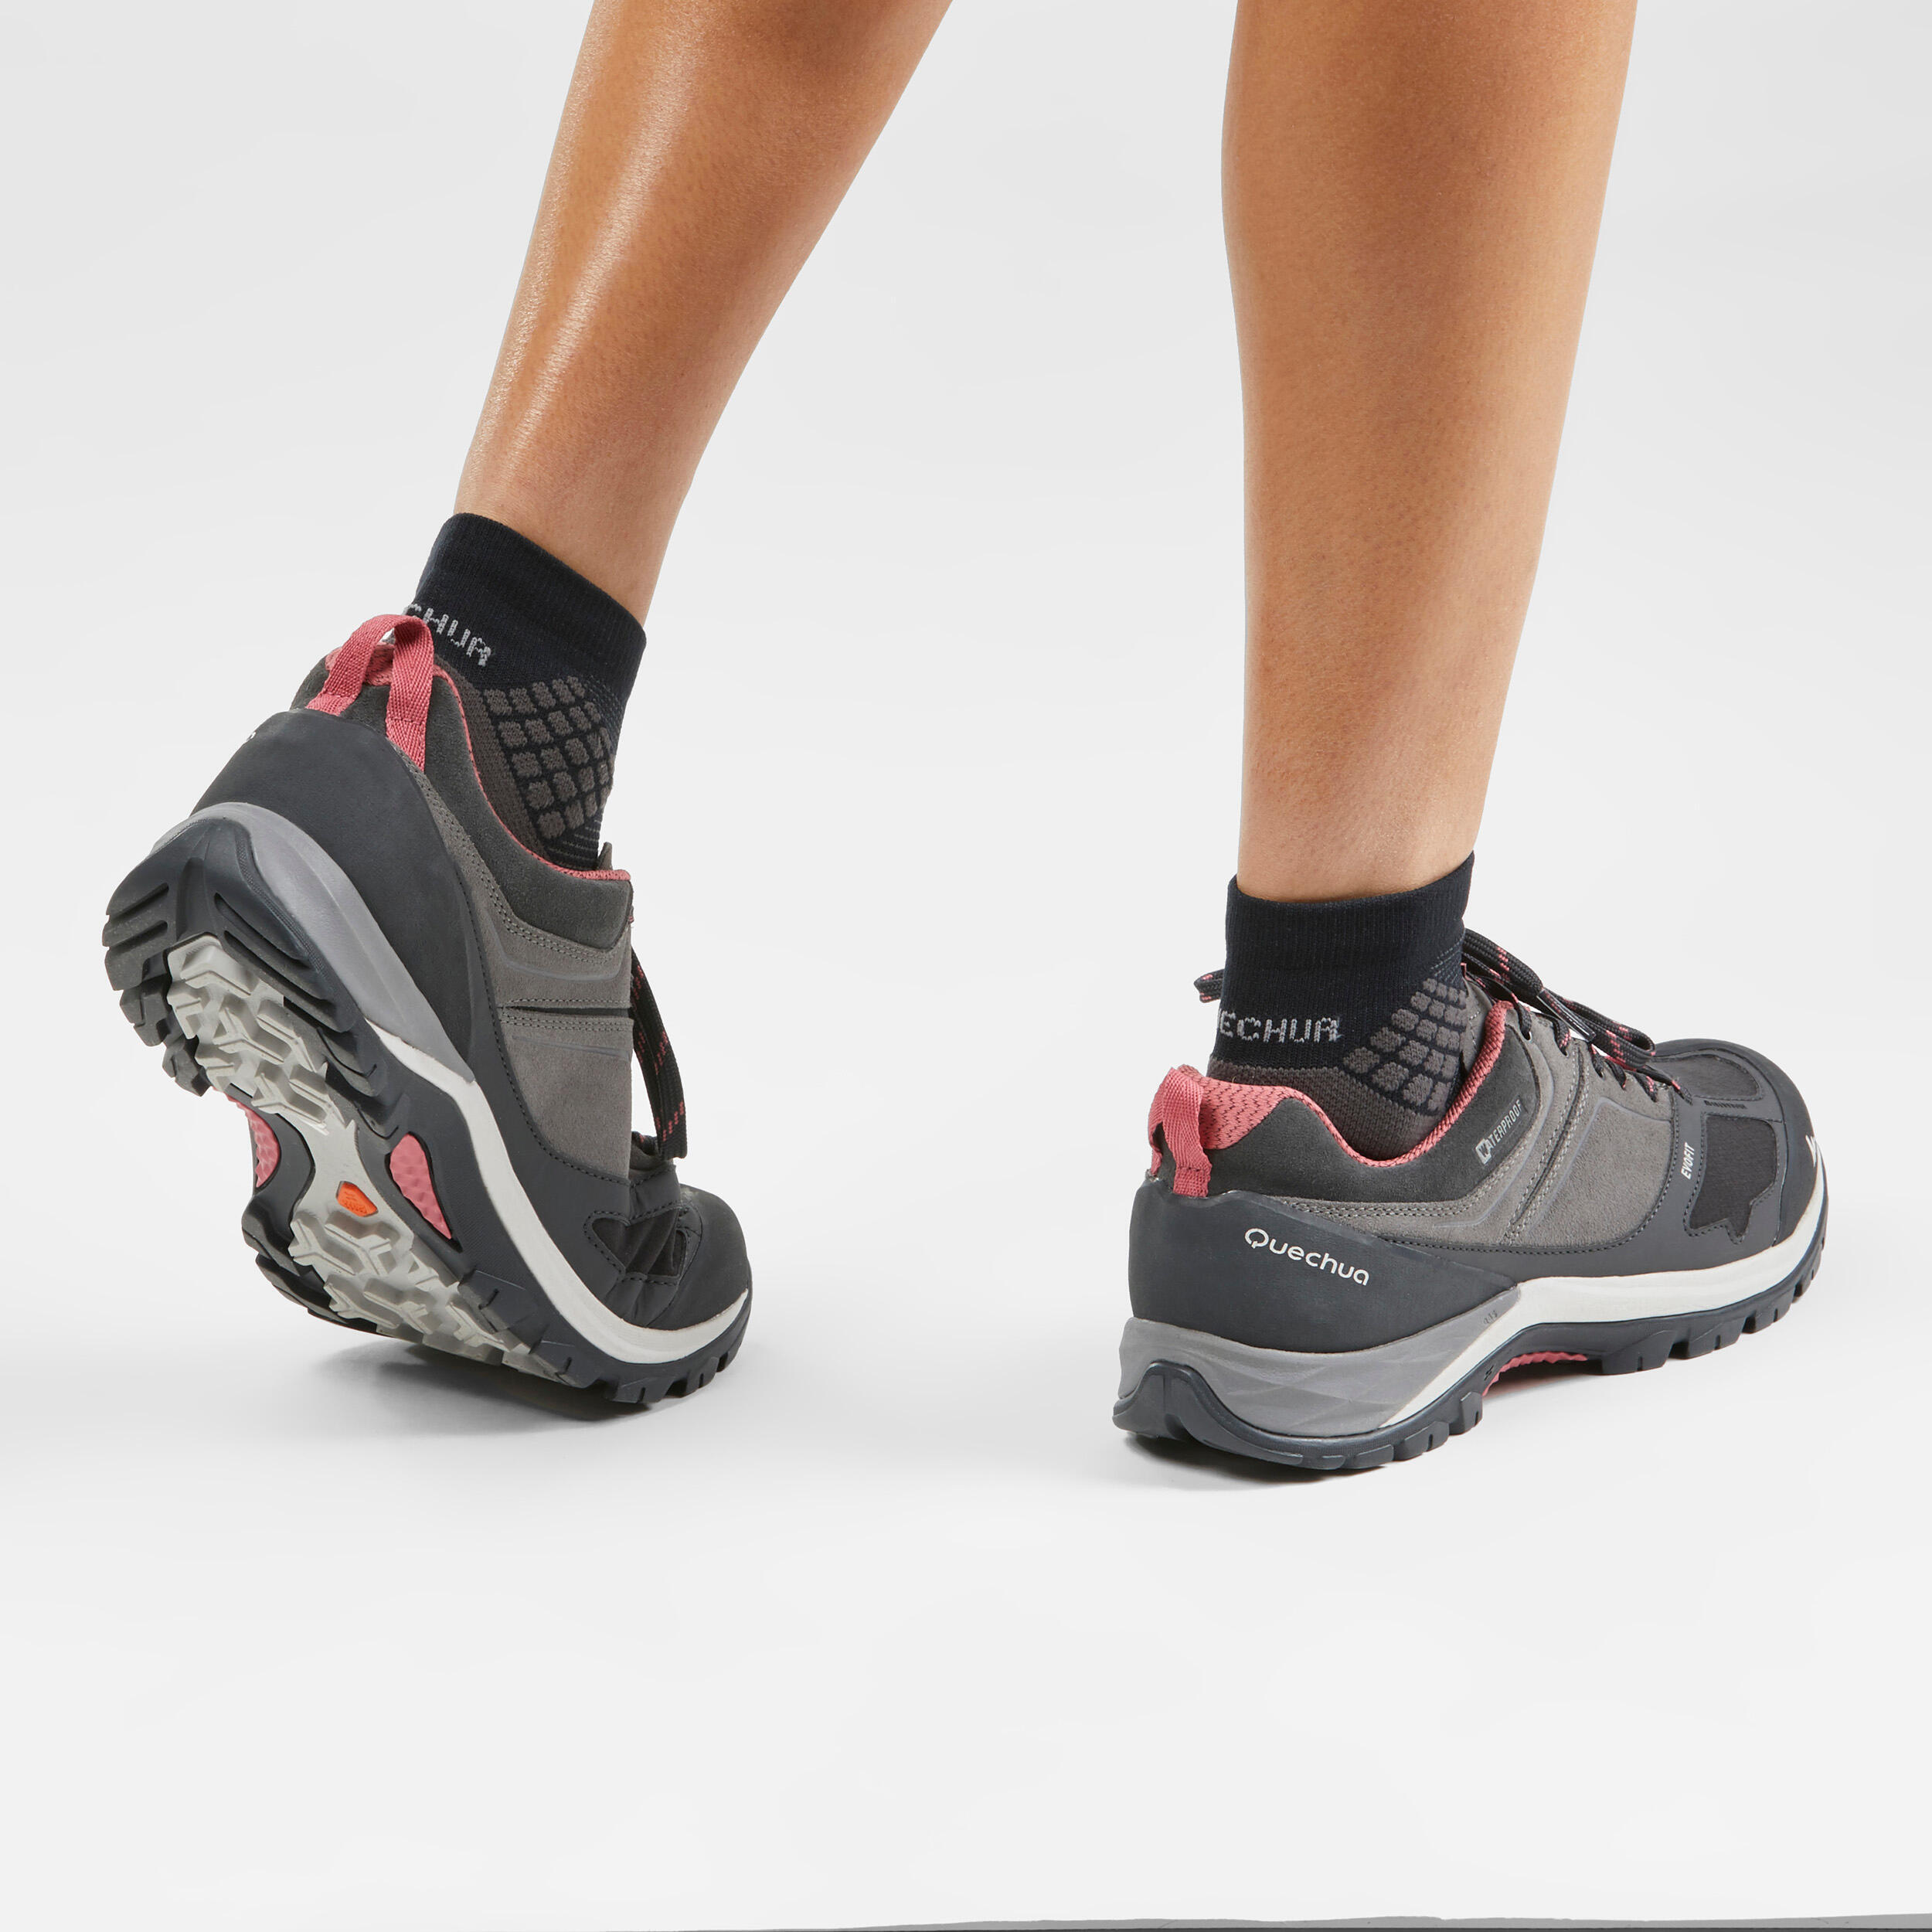 Women's Mountain Walking Waterproof Shoes - MH500 - pink/grey 6/7